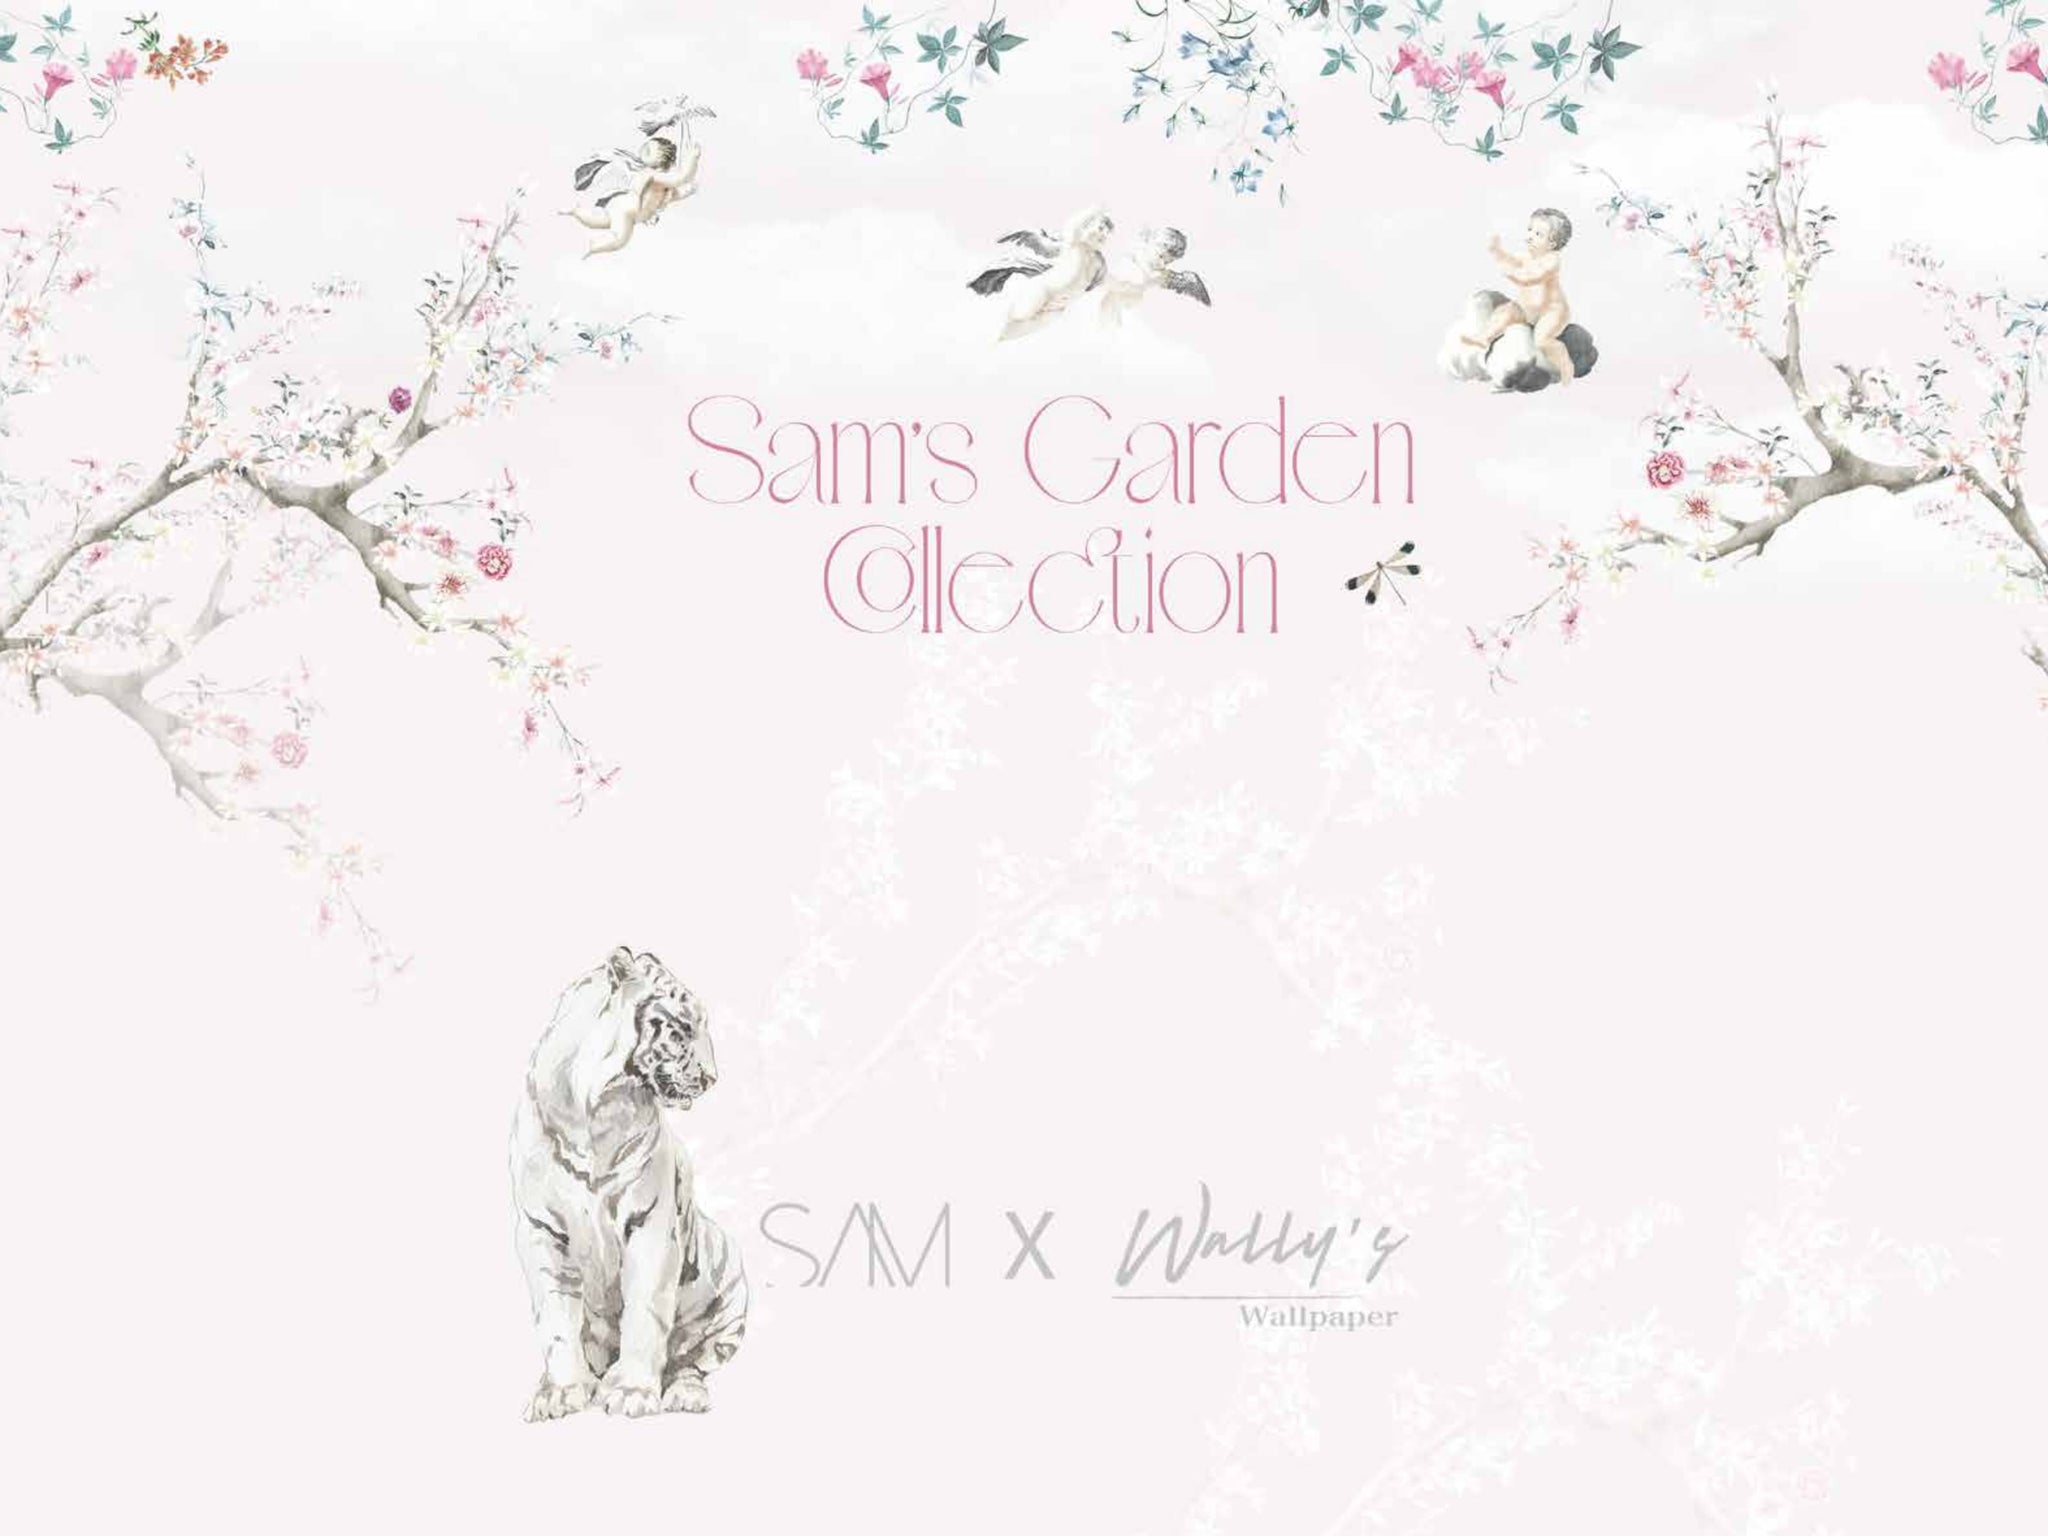 Sam's Garden Collection Catalogue